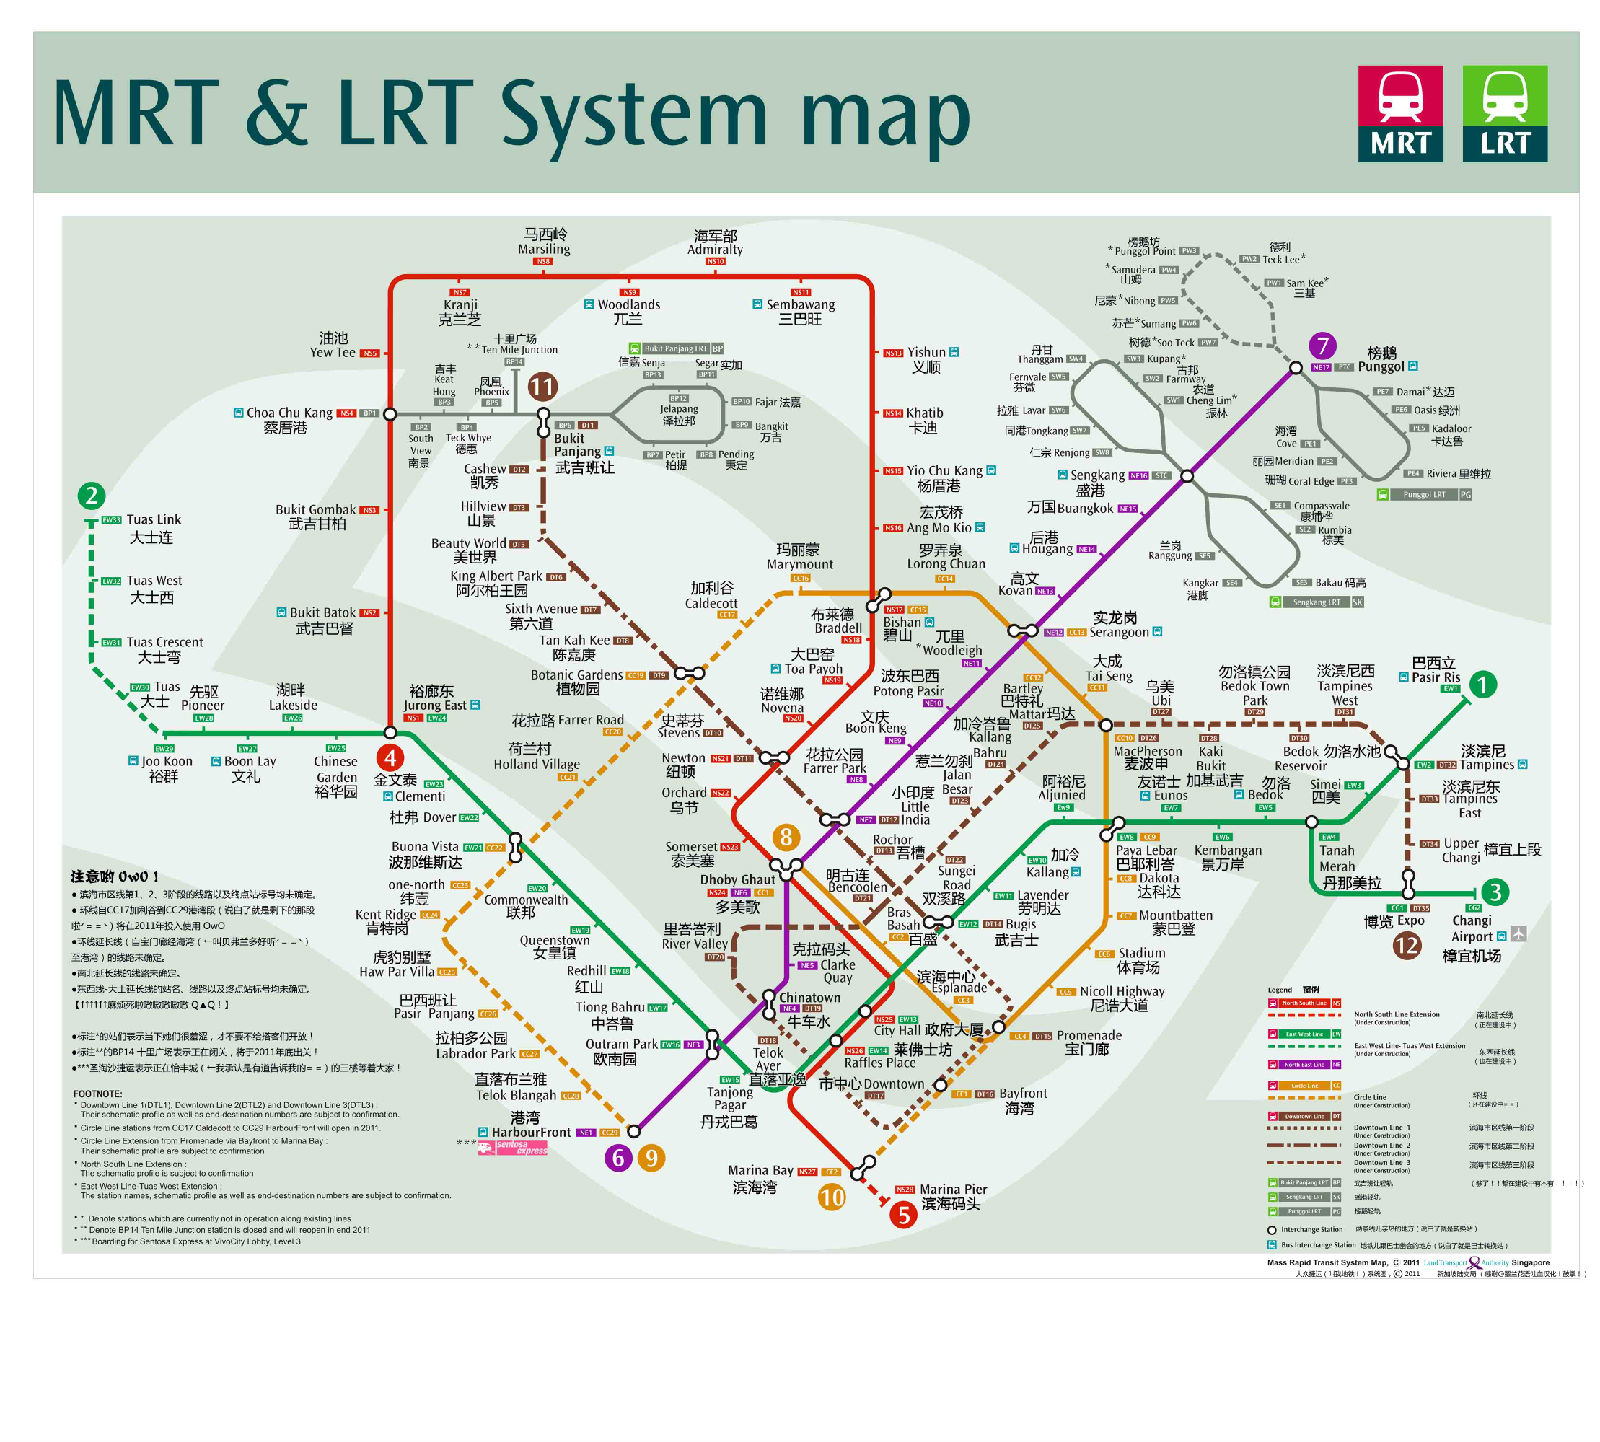 新加坡地铁运营时间:一般运营时间在5:30~0:30 每两分半到8分一班